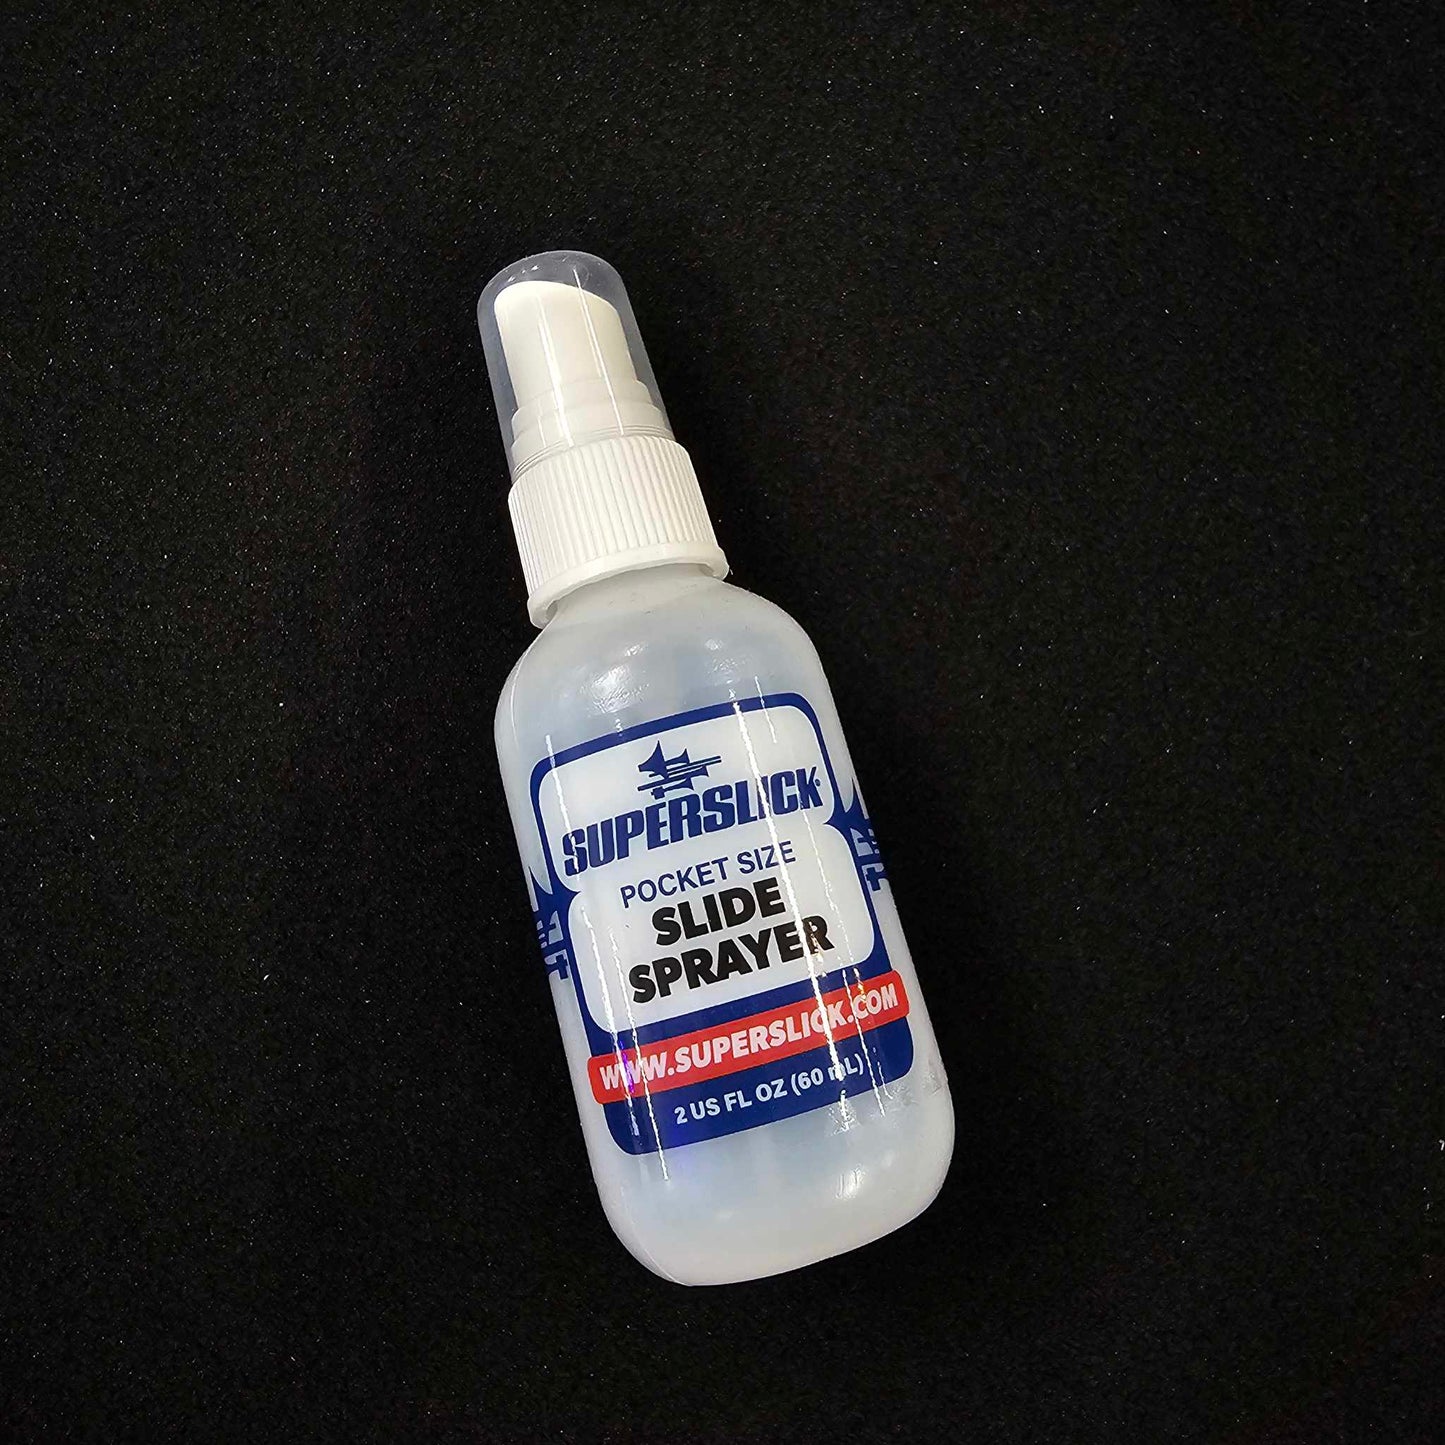 Superslick Pocket Size Slide Spray Bottle